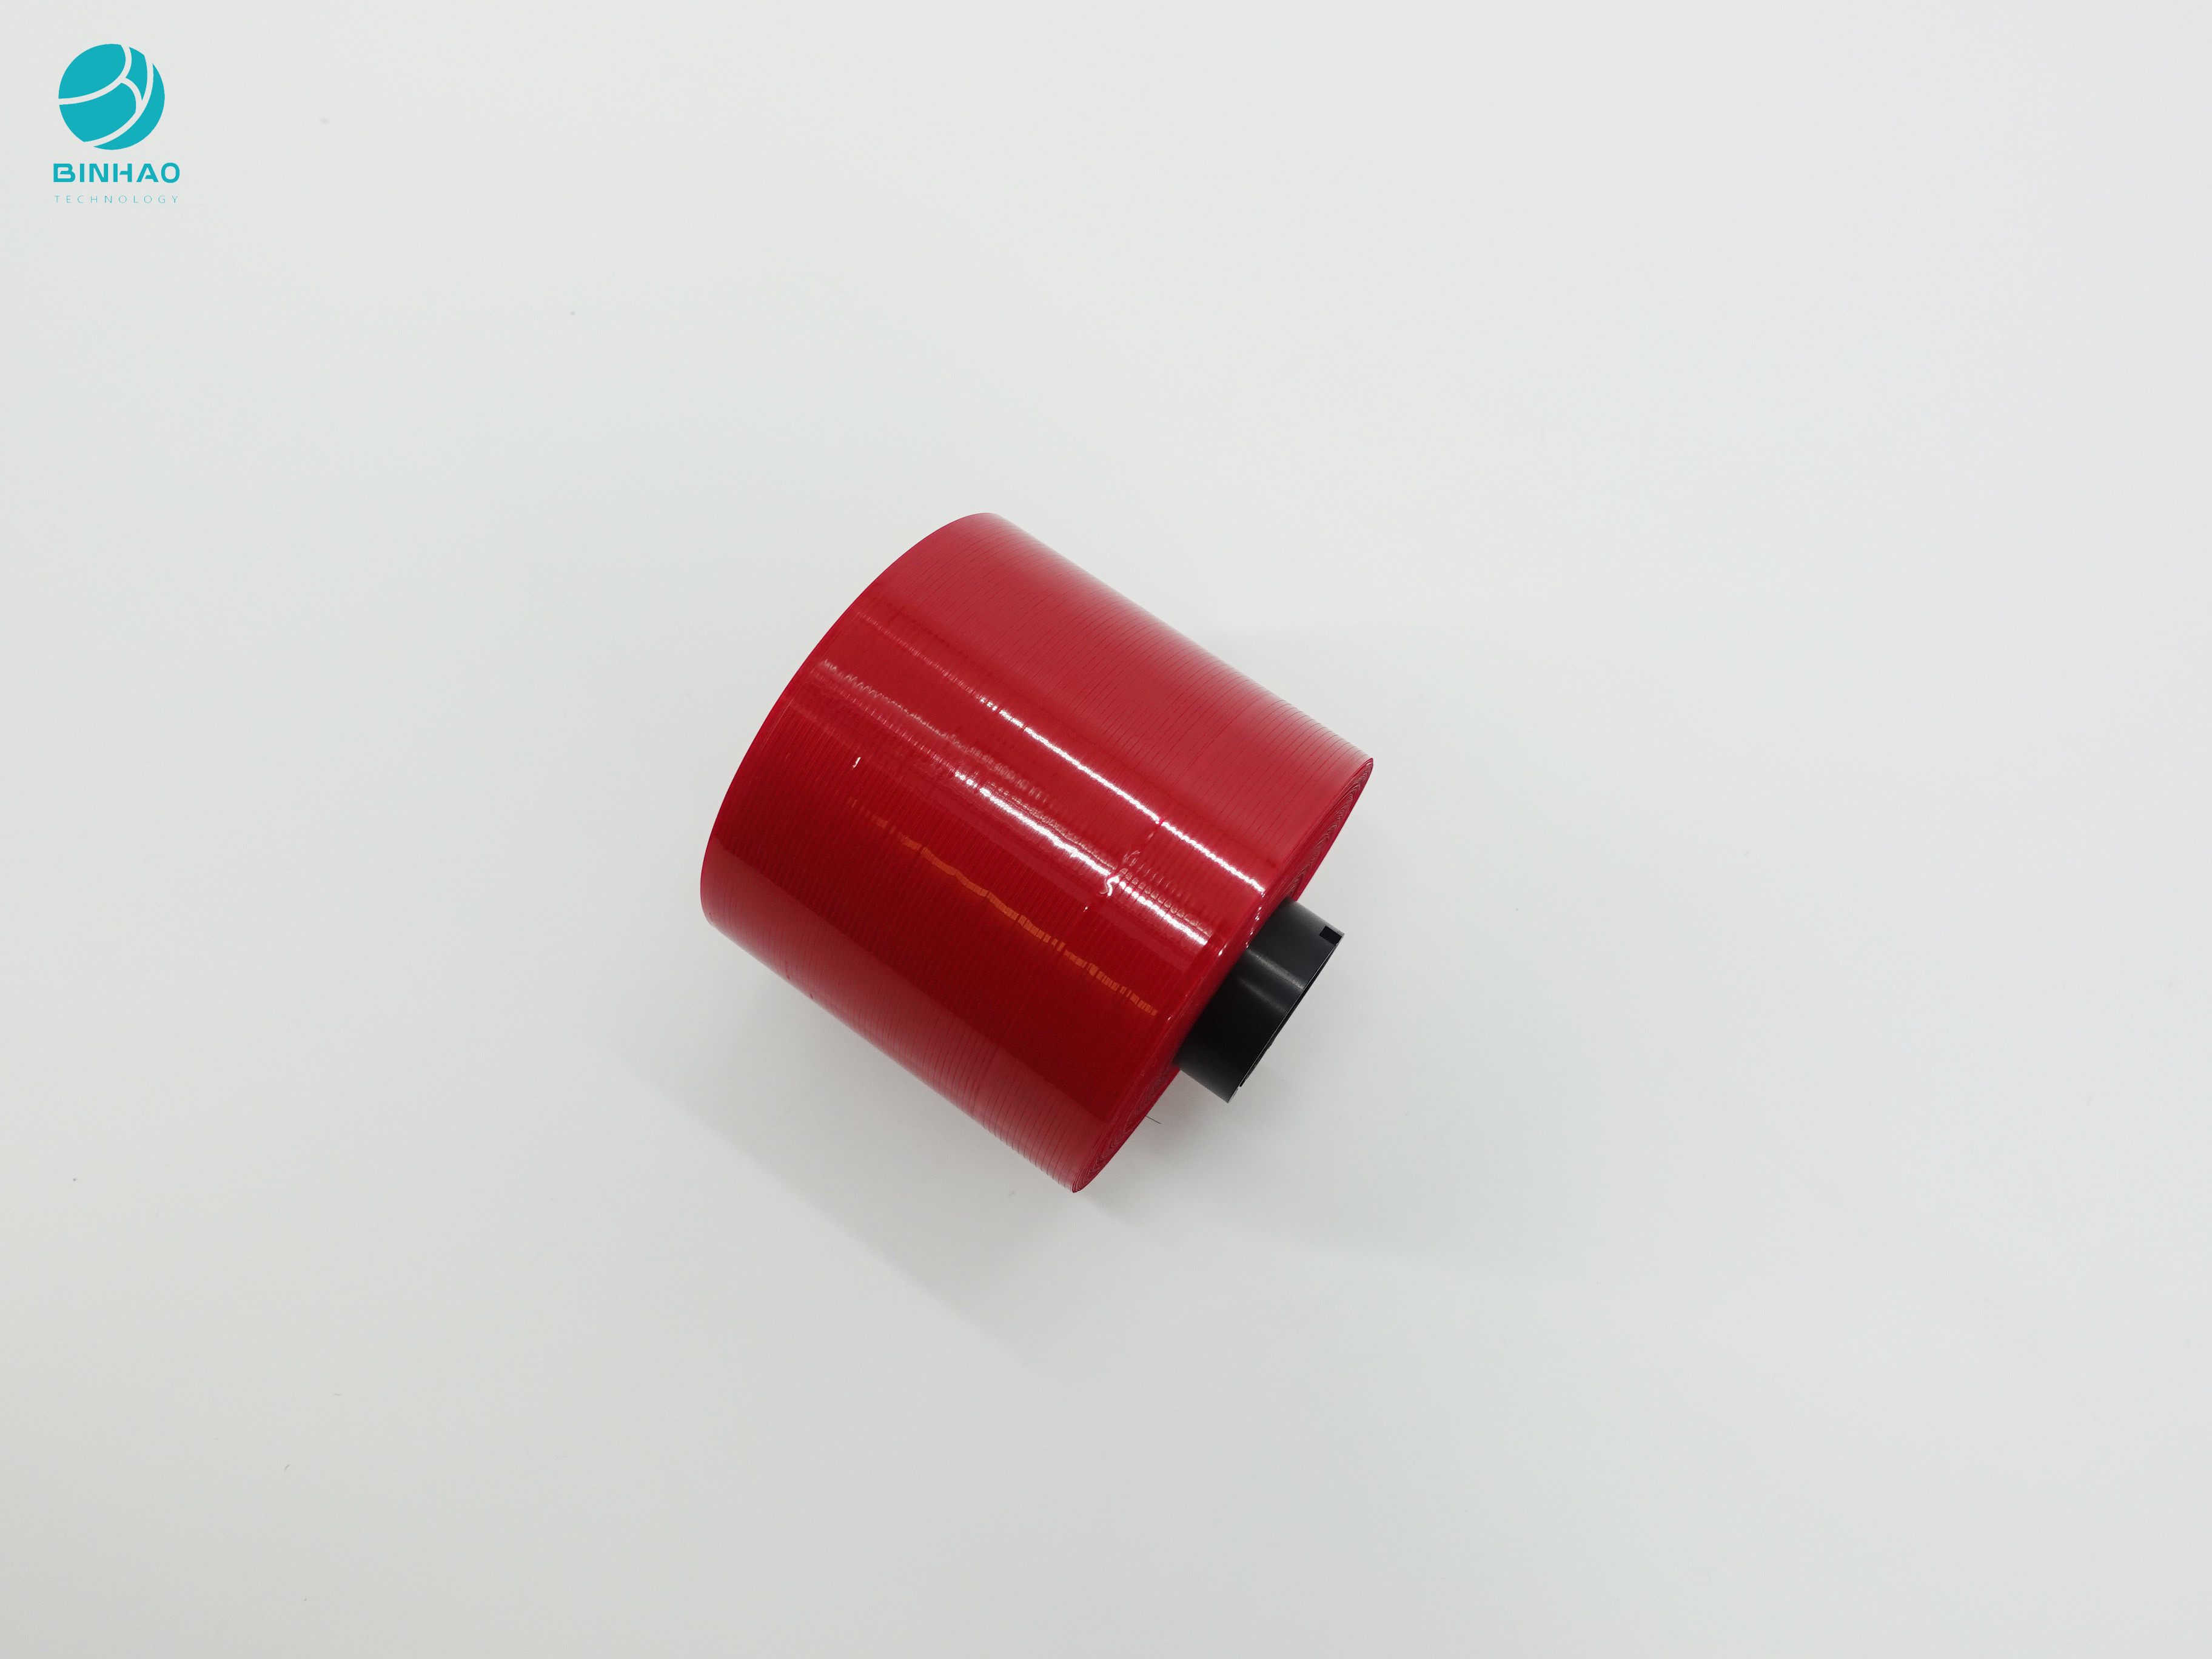 담배 상자포장을 위한 어두운 빨강색 반대 무단 복제 디자인 3 밀리미터 개봉 테프